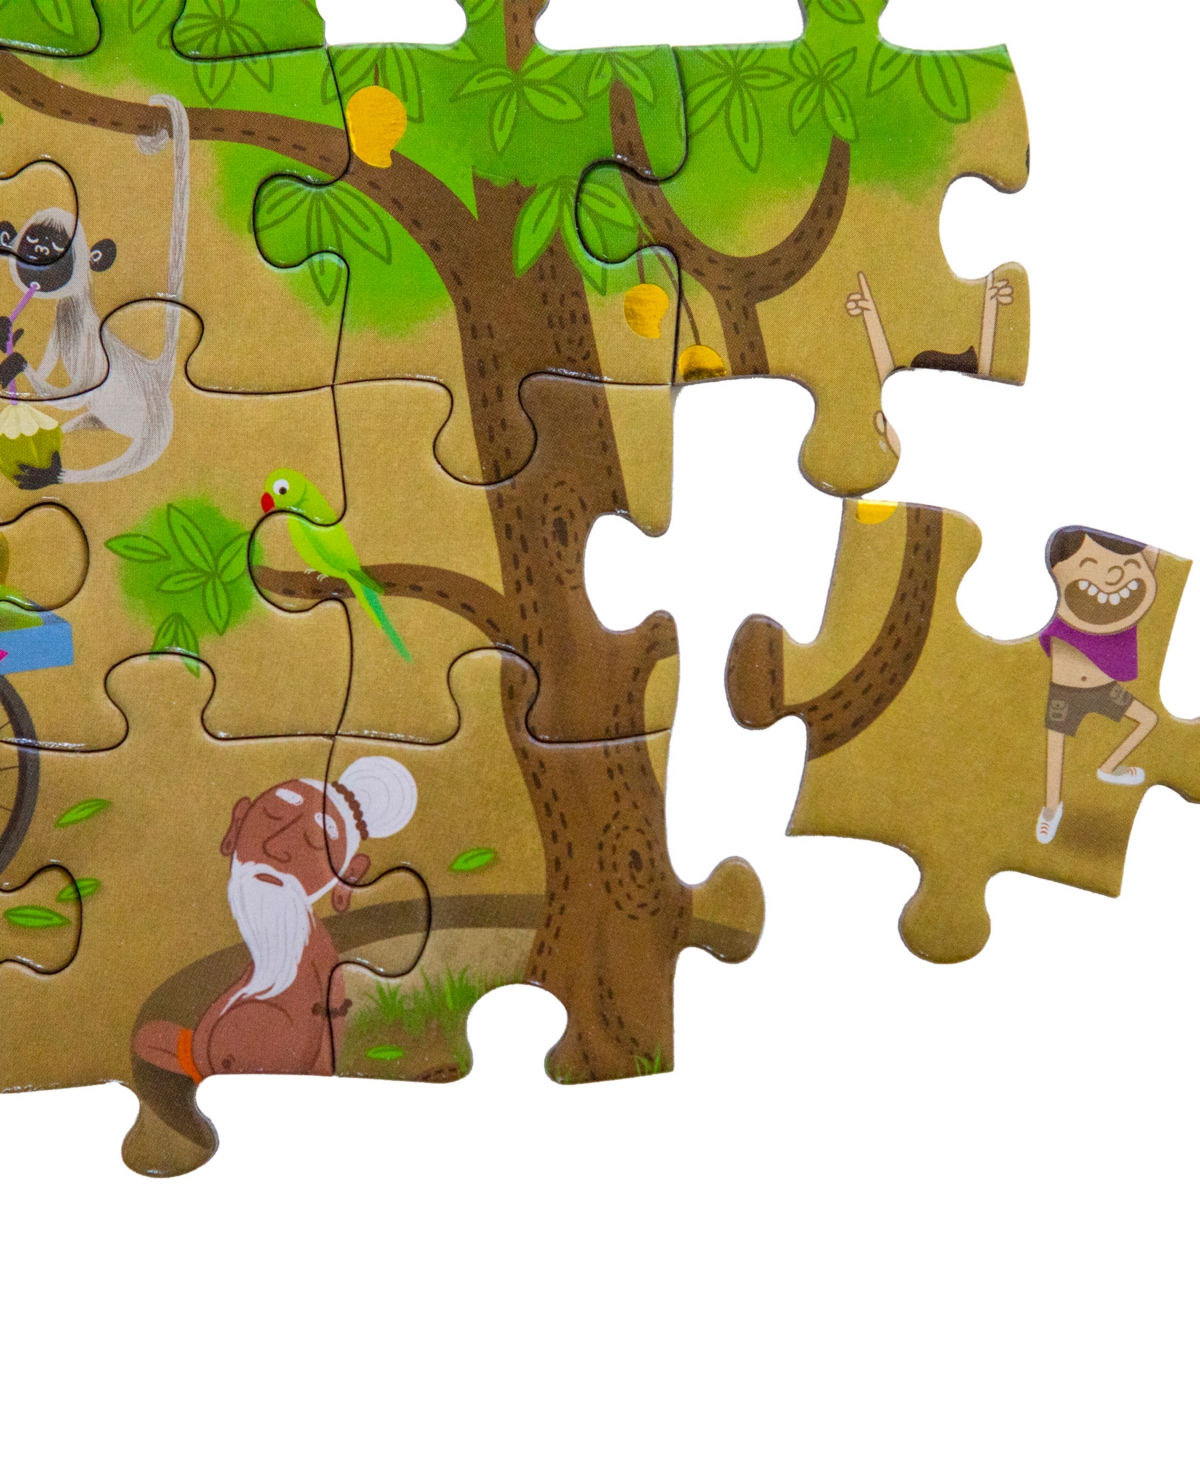 Shop Kulture Khazana Namaste India Tabletop Puzzle, 150 Pieces In Mutli